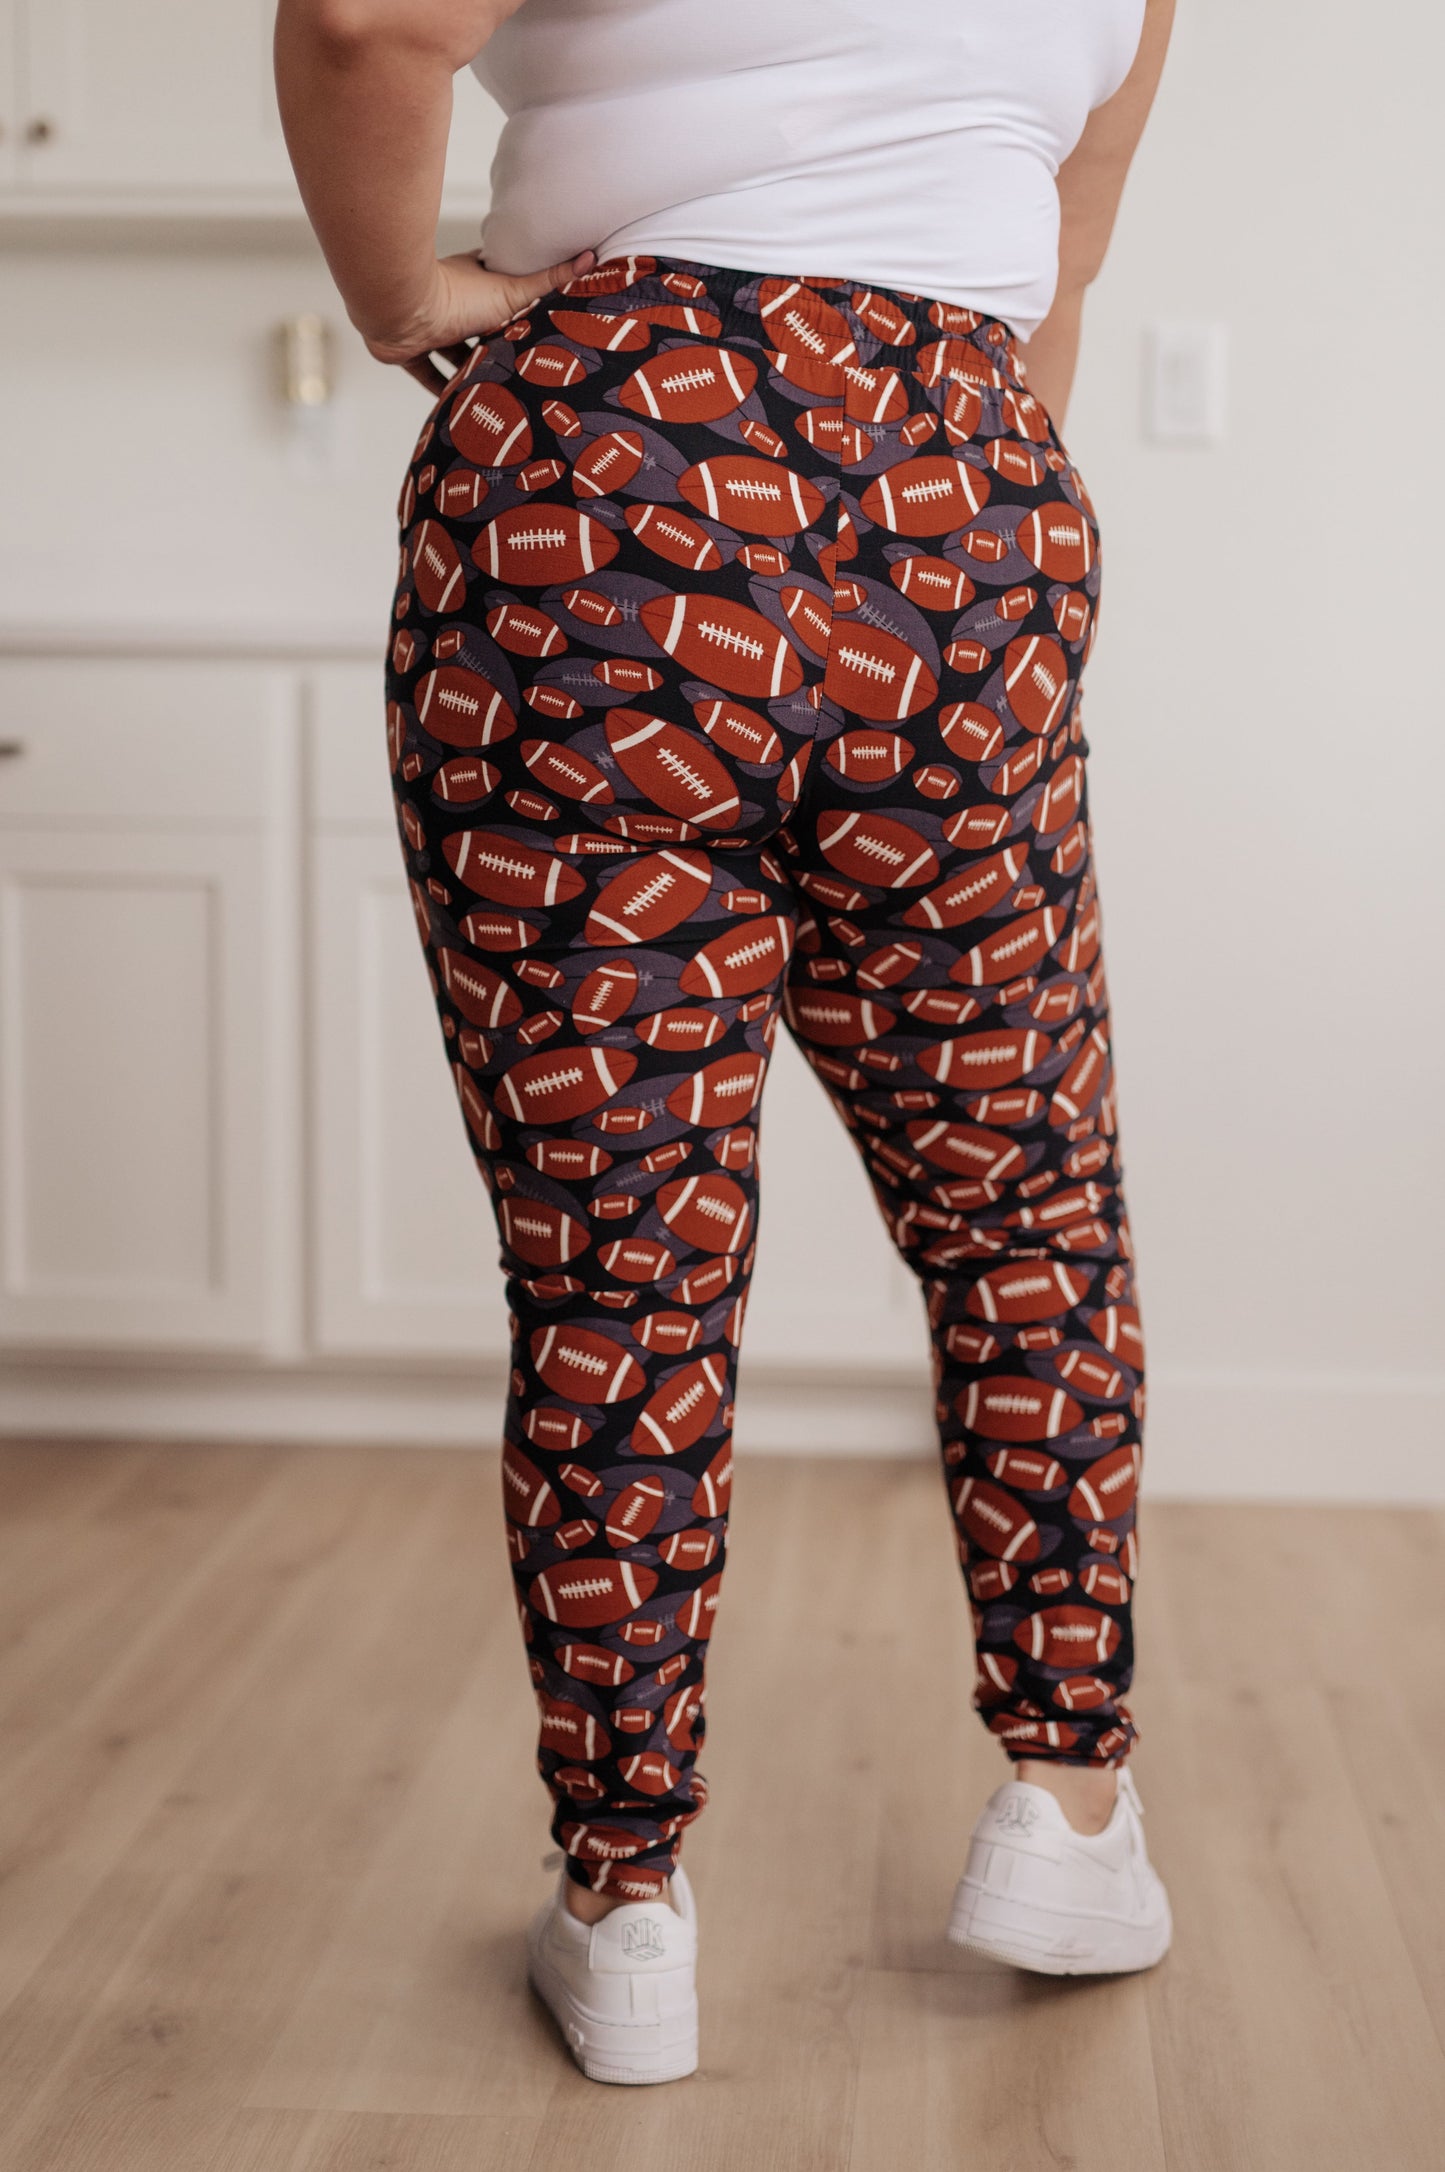 Tus nuevos pantalones deportivos favoritos en el fútbol (exclusivo en línea)